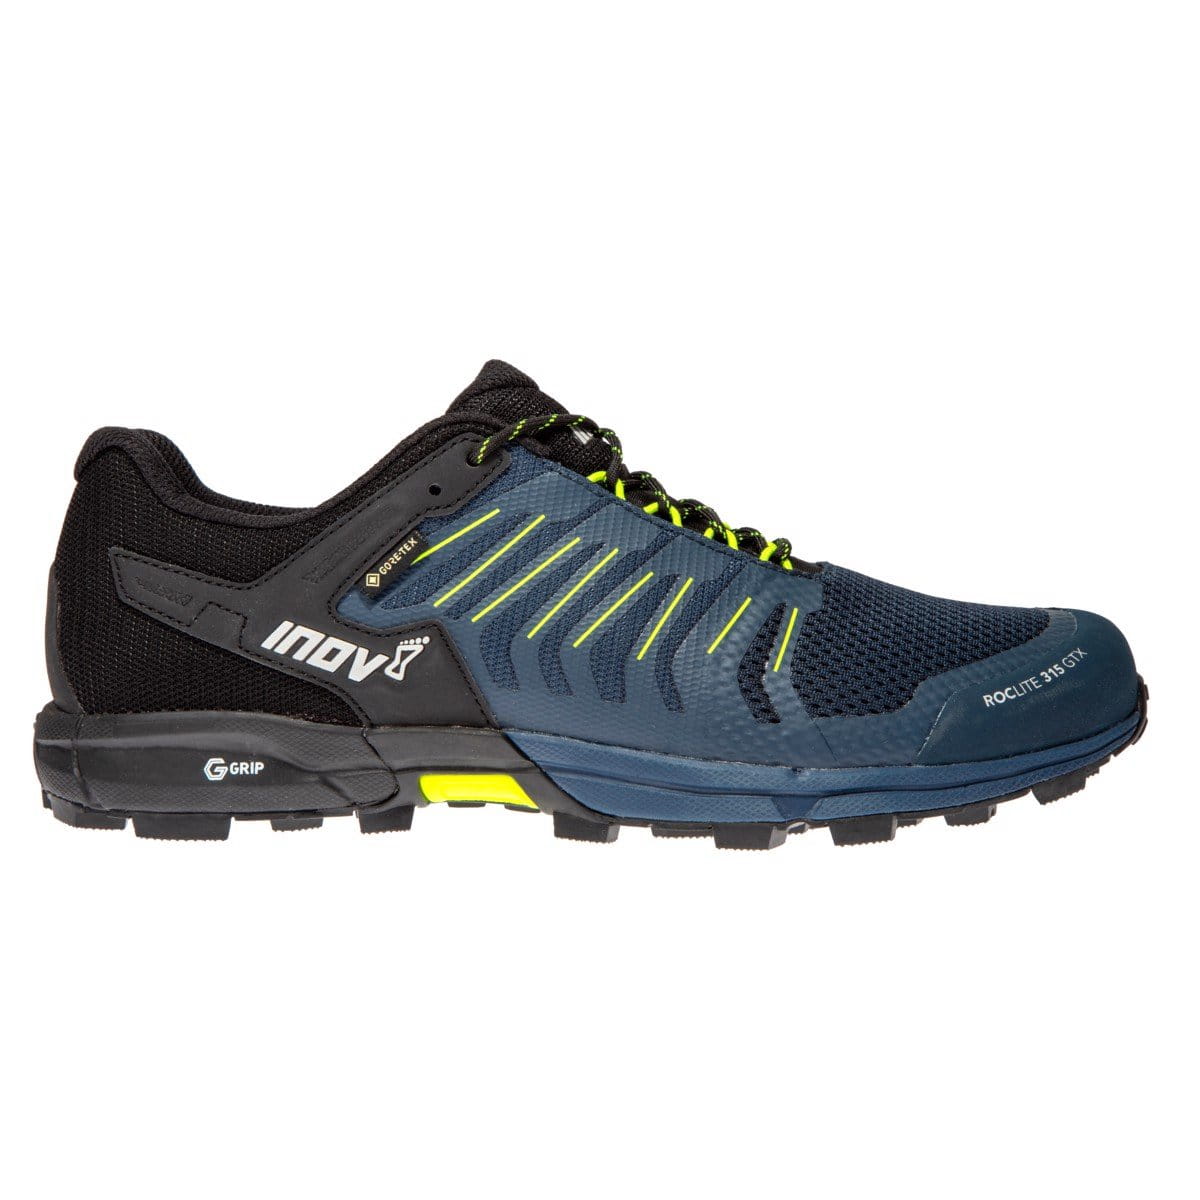 Bežecké topánky Inov-8  ROCLITE 315 GTX M (M) navy/yellow modrá/žlutá